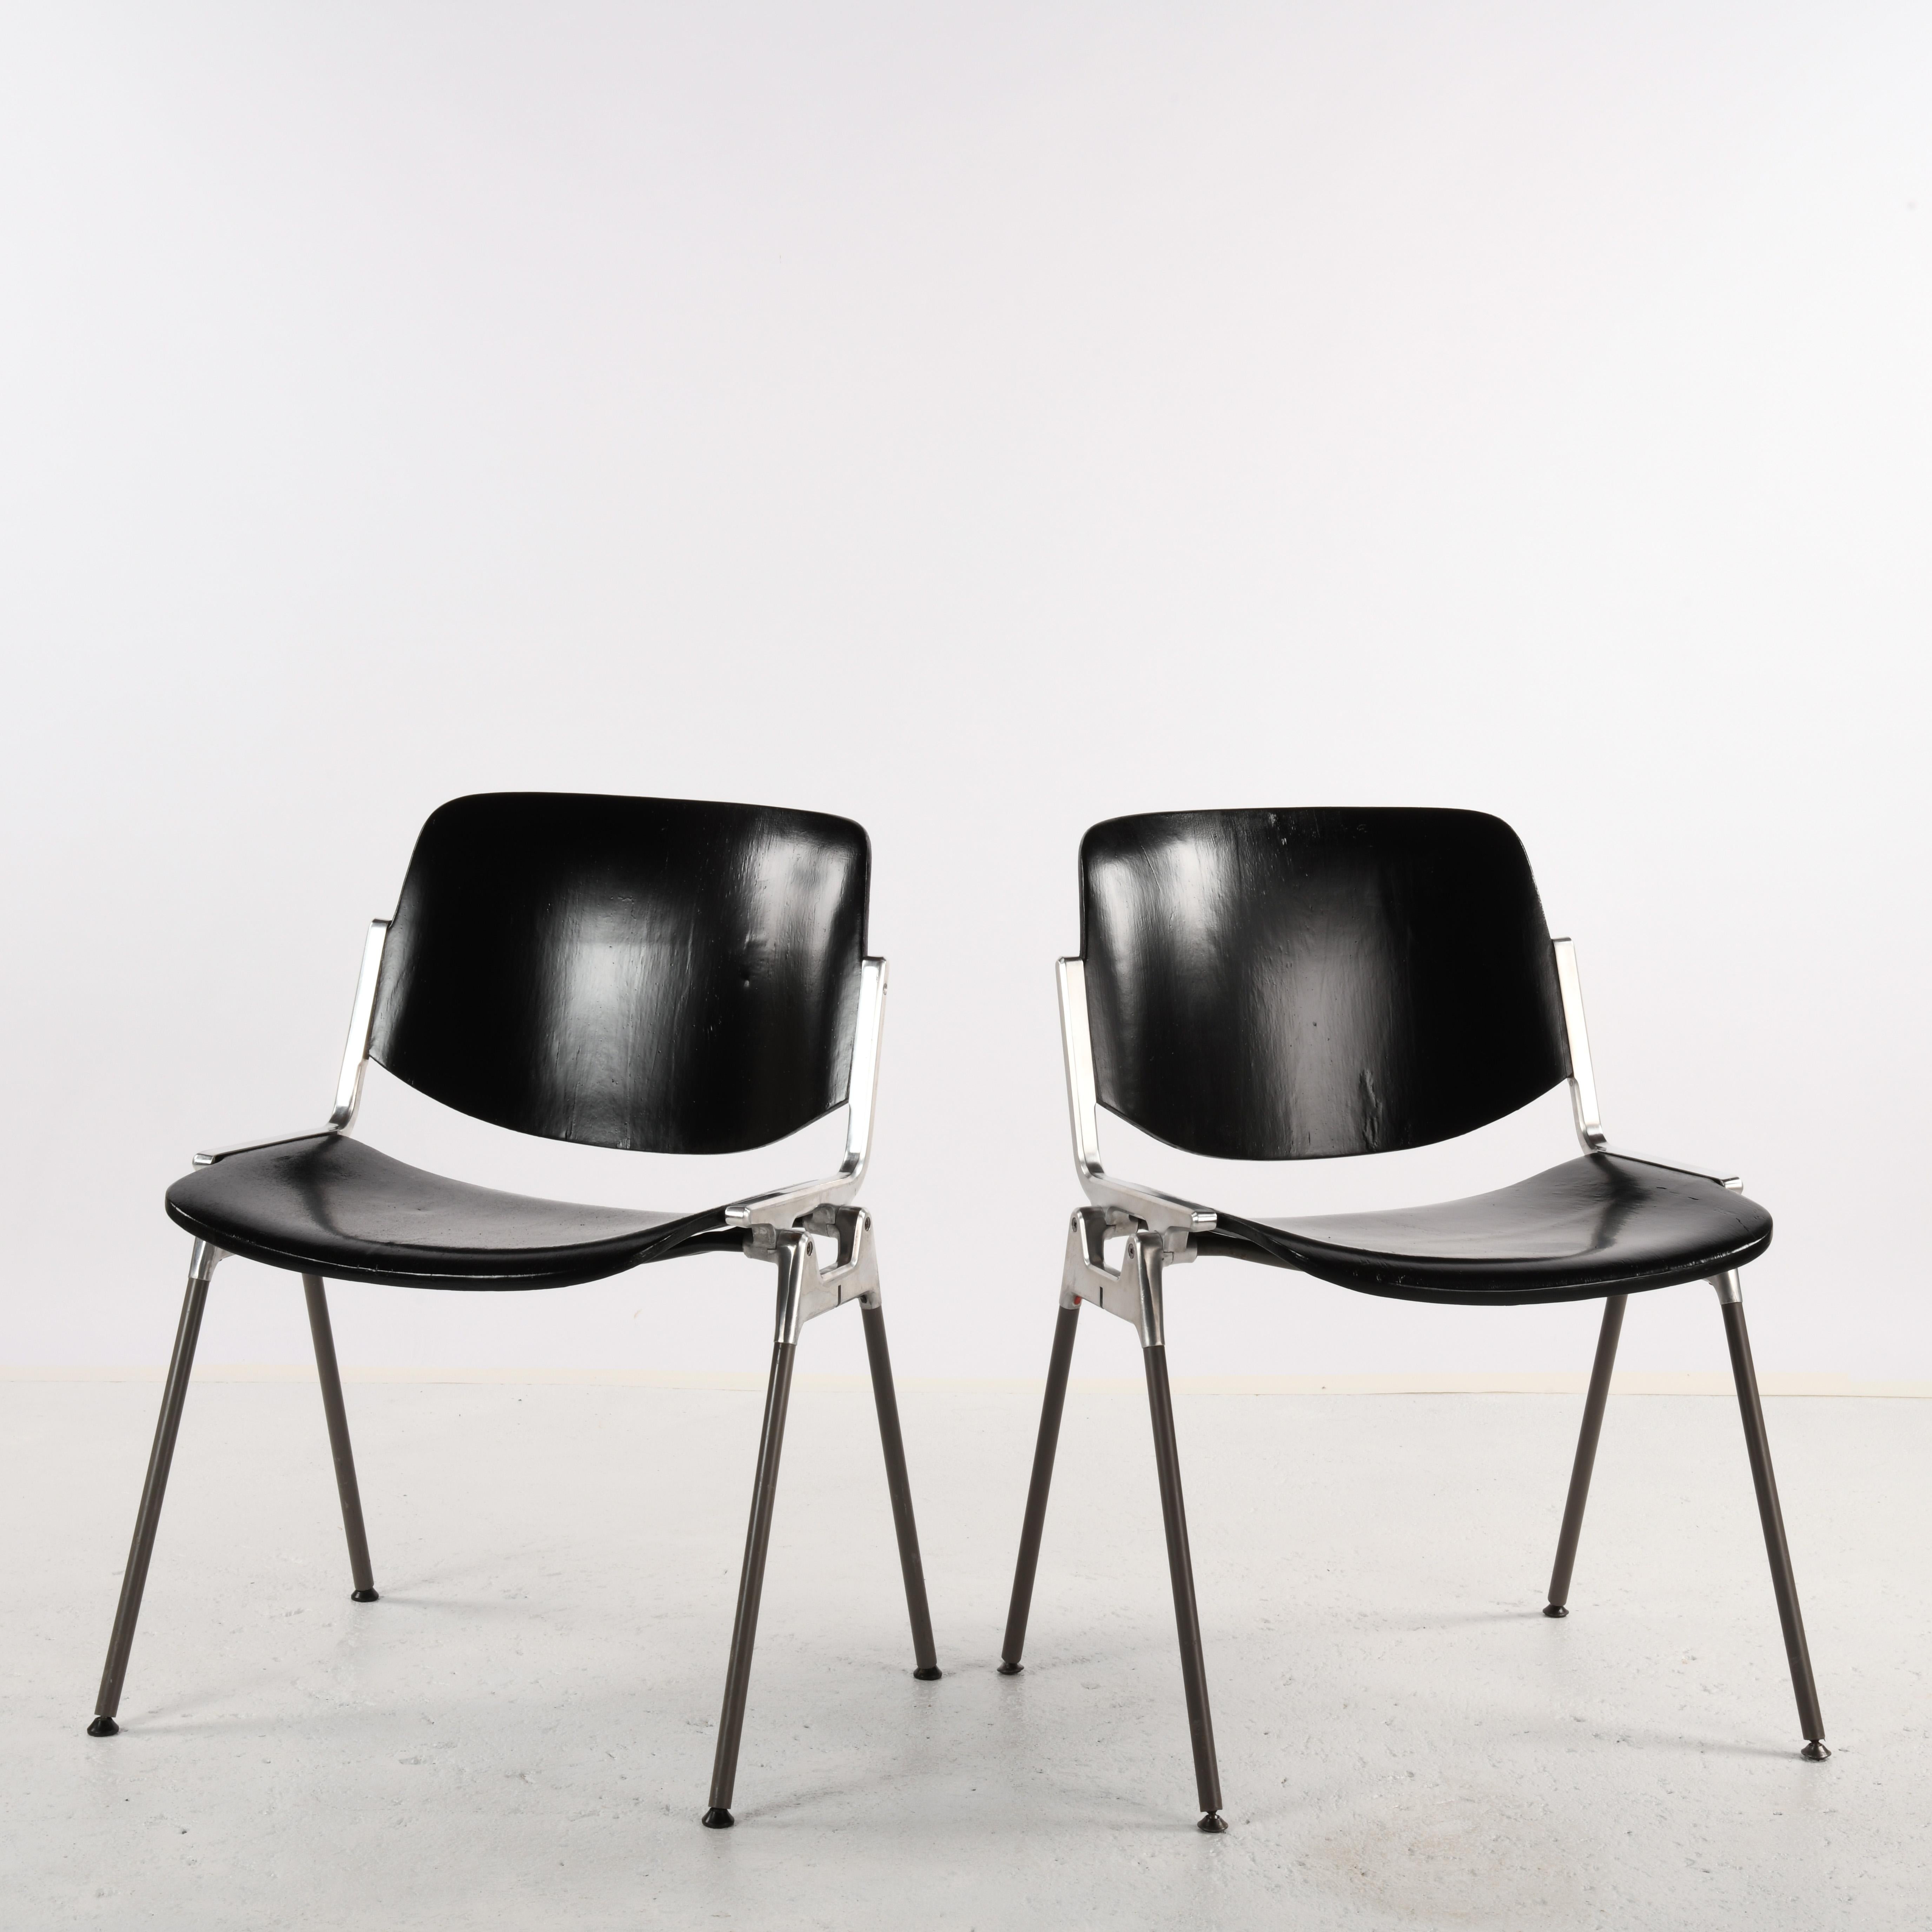 Paire de chaises modèle DSC 106 dessinées par Giancarlo Piretti en 1965 éditées par Castelli. Structure en fonte d'aluminium, pieds en métal recouverts de plastique, assise et dossier en bois peint. L'assise et le dossier étaient à l'origine